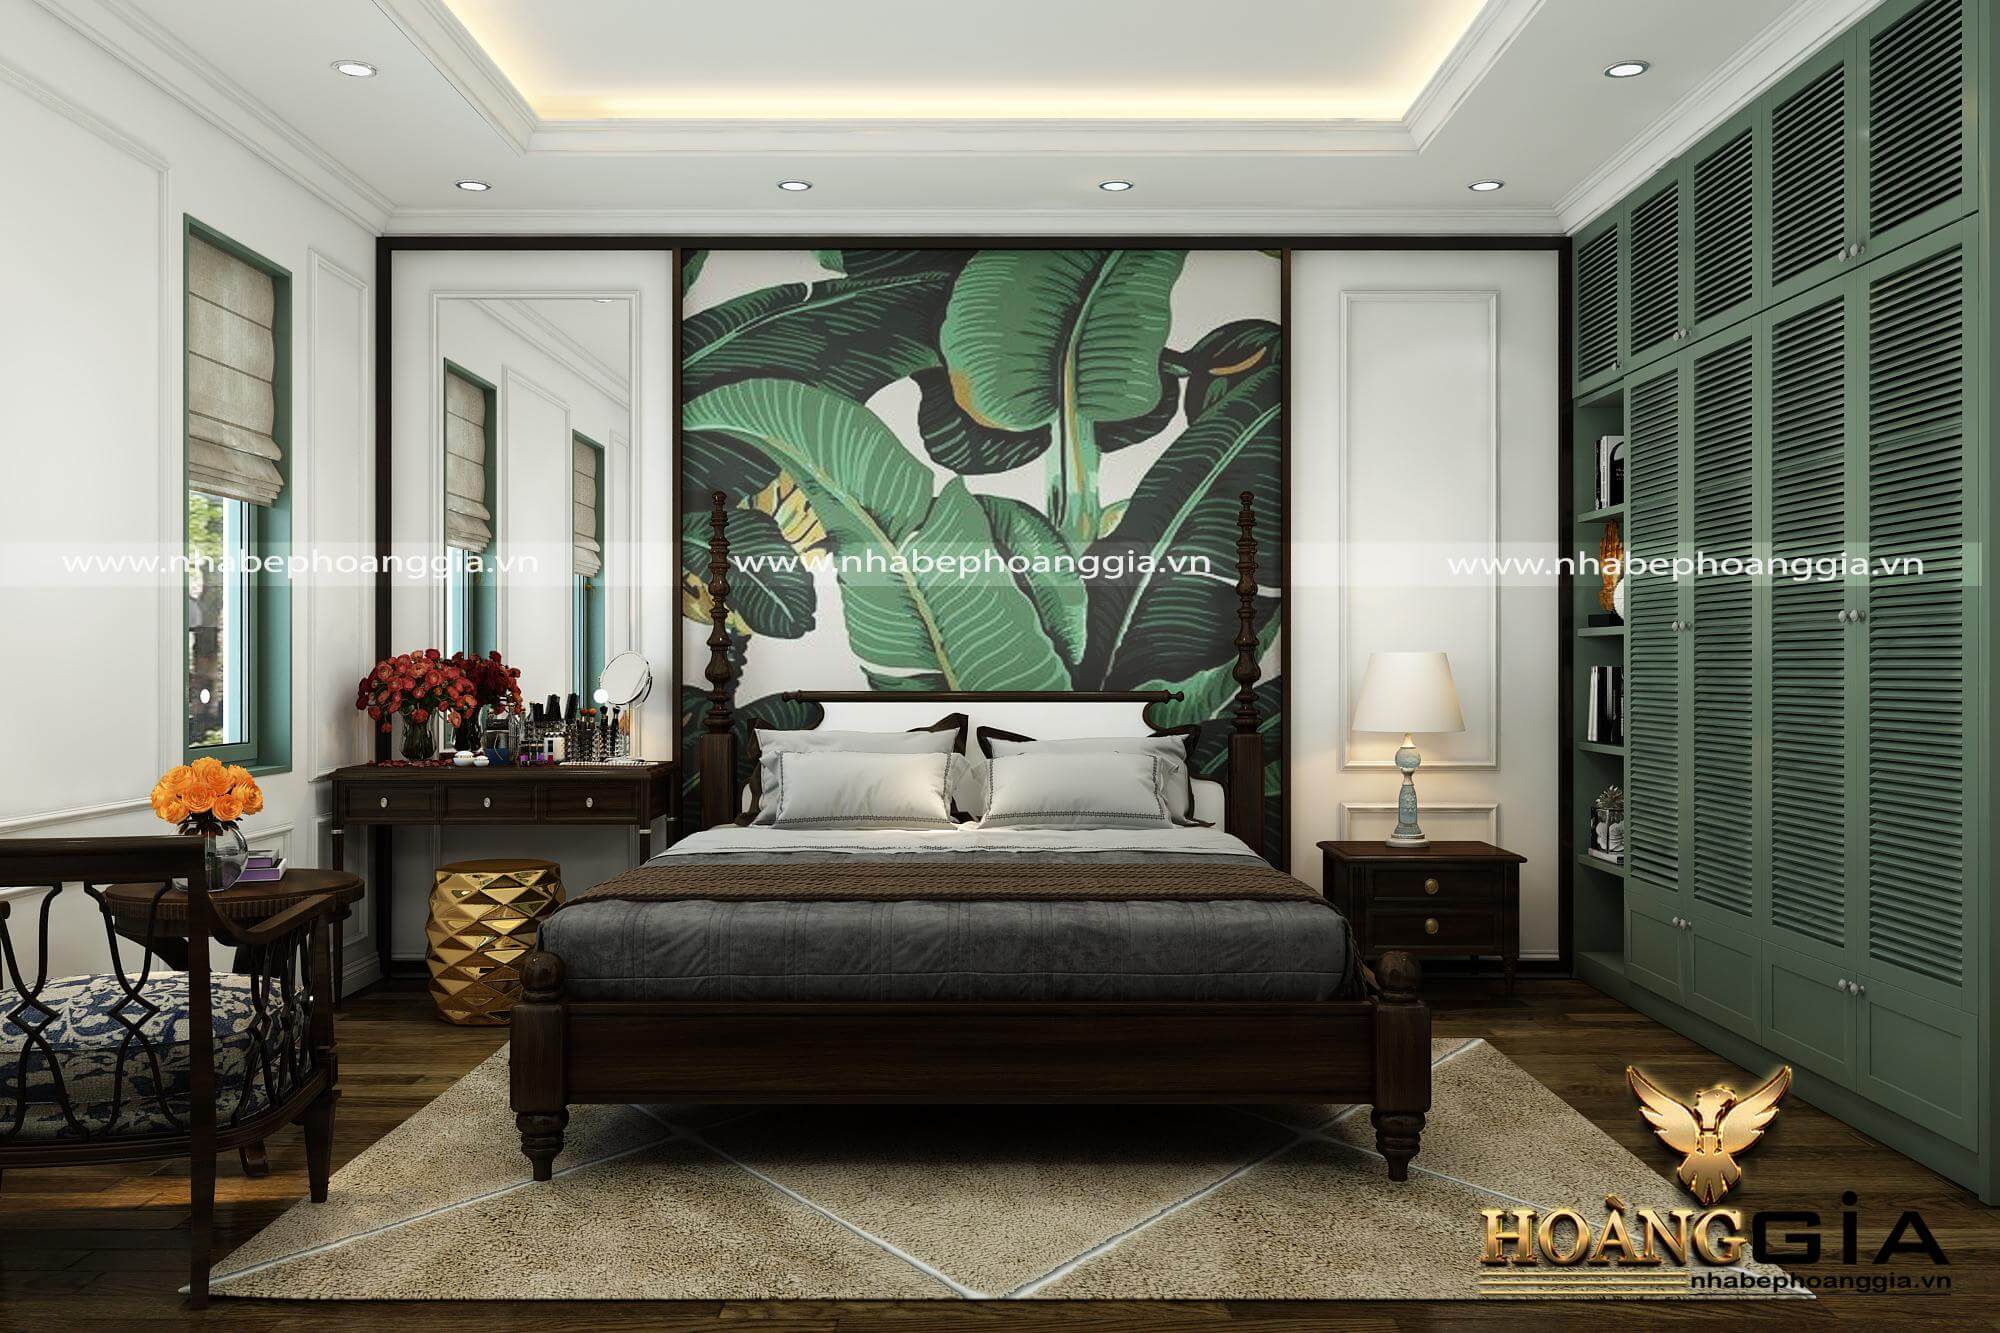 Khám phá thêm vẻ đẹp của phòng ngủ Indochine tuyệt đẹp này. Với những gam màu dịu nhẹ, chi tiết độc đáo và thiết kế đẹp mắt, không gian nghỉ ngơi này sẽ mang lại cho bạn cảm giác tuyệt vời và giúp bạn thư thái.